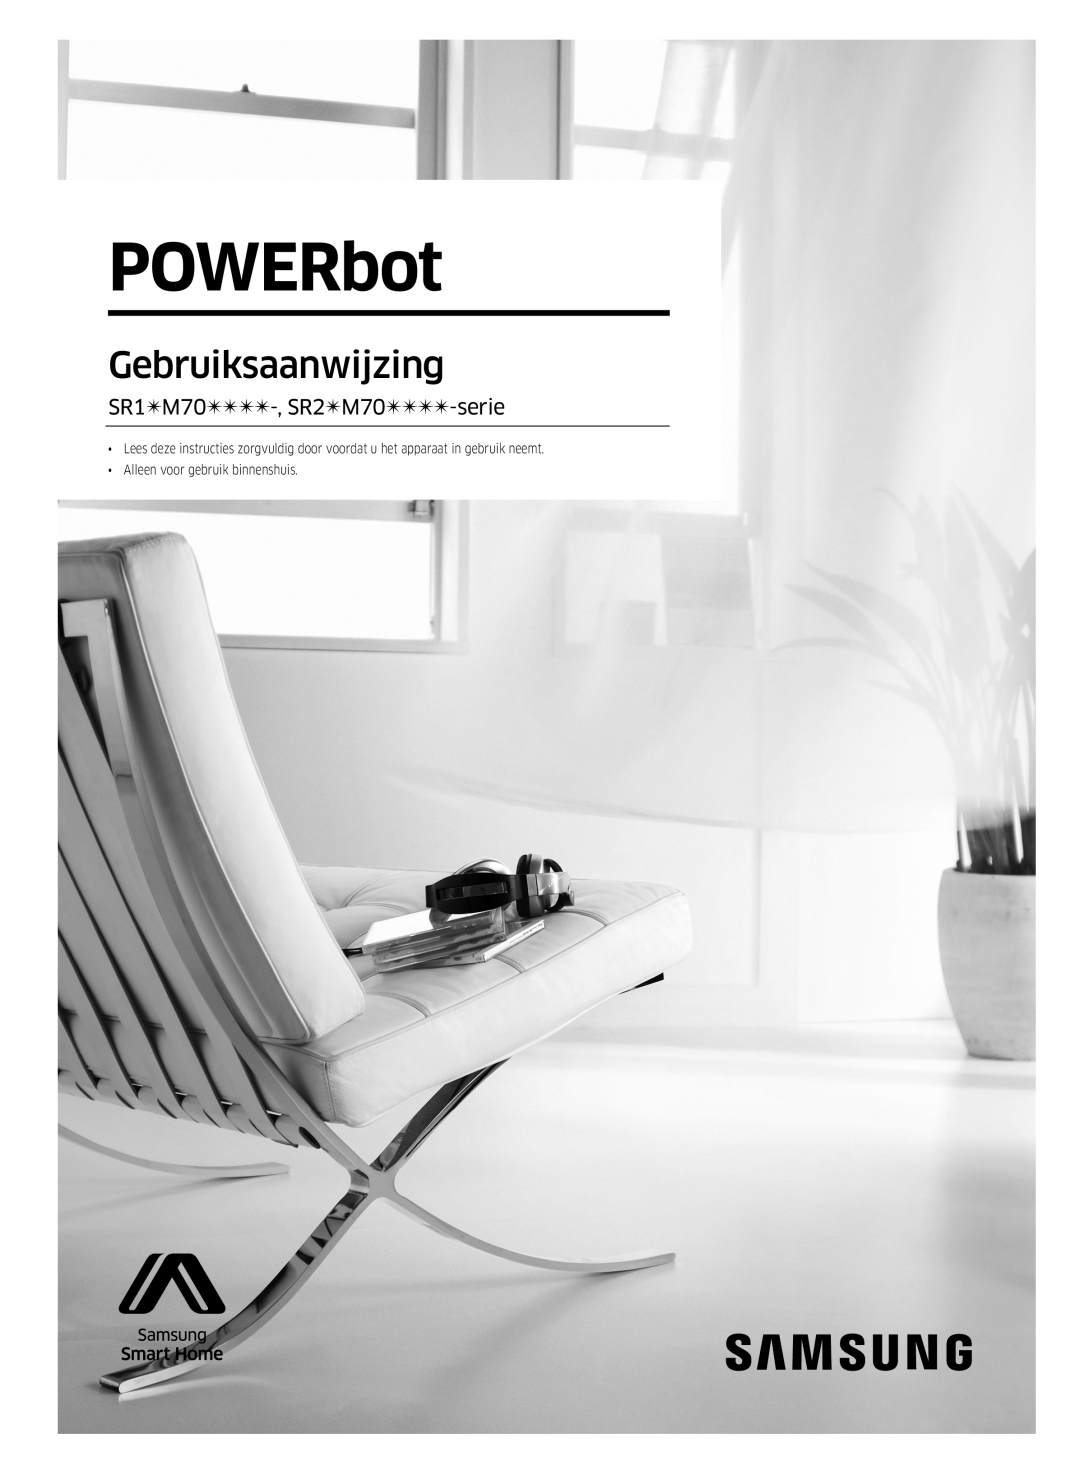 Samsung VR1GM7020UG/EG manual Gebruiksaanwijzing, POWERbot, SR1M70-, SR2M70-serie, Alleen voor gebruik binnenshuis 